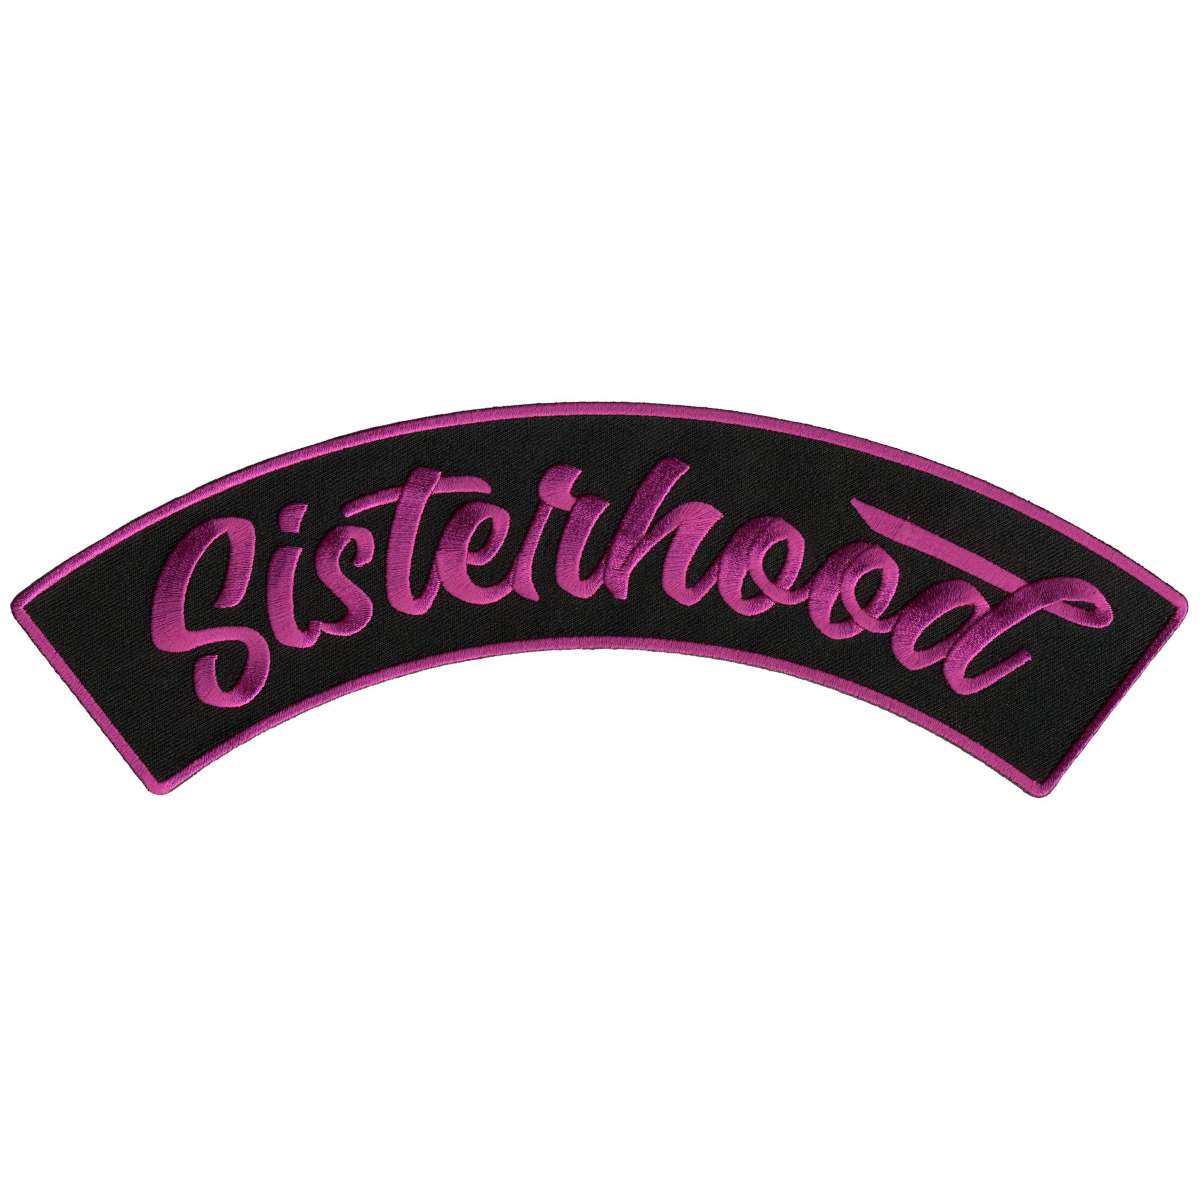 Hot Leathers Sisterhood 10” X 2” Top Rocker Patch PPM4151